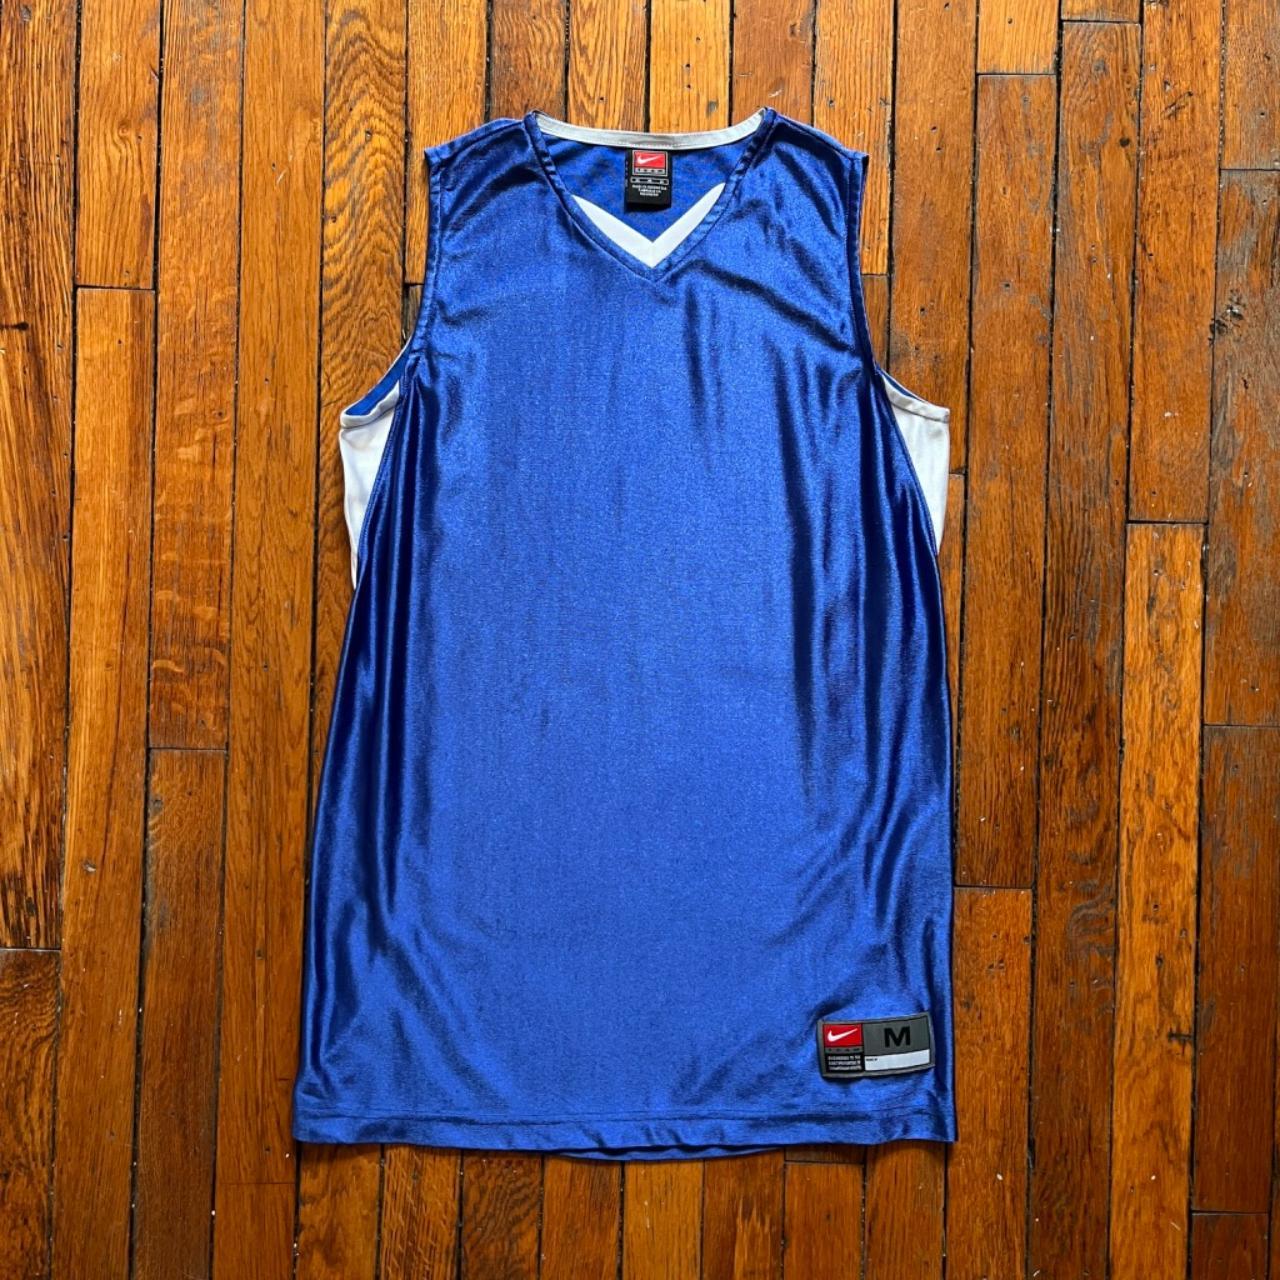 Vintage Nike blue/white reversible practice - Depop